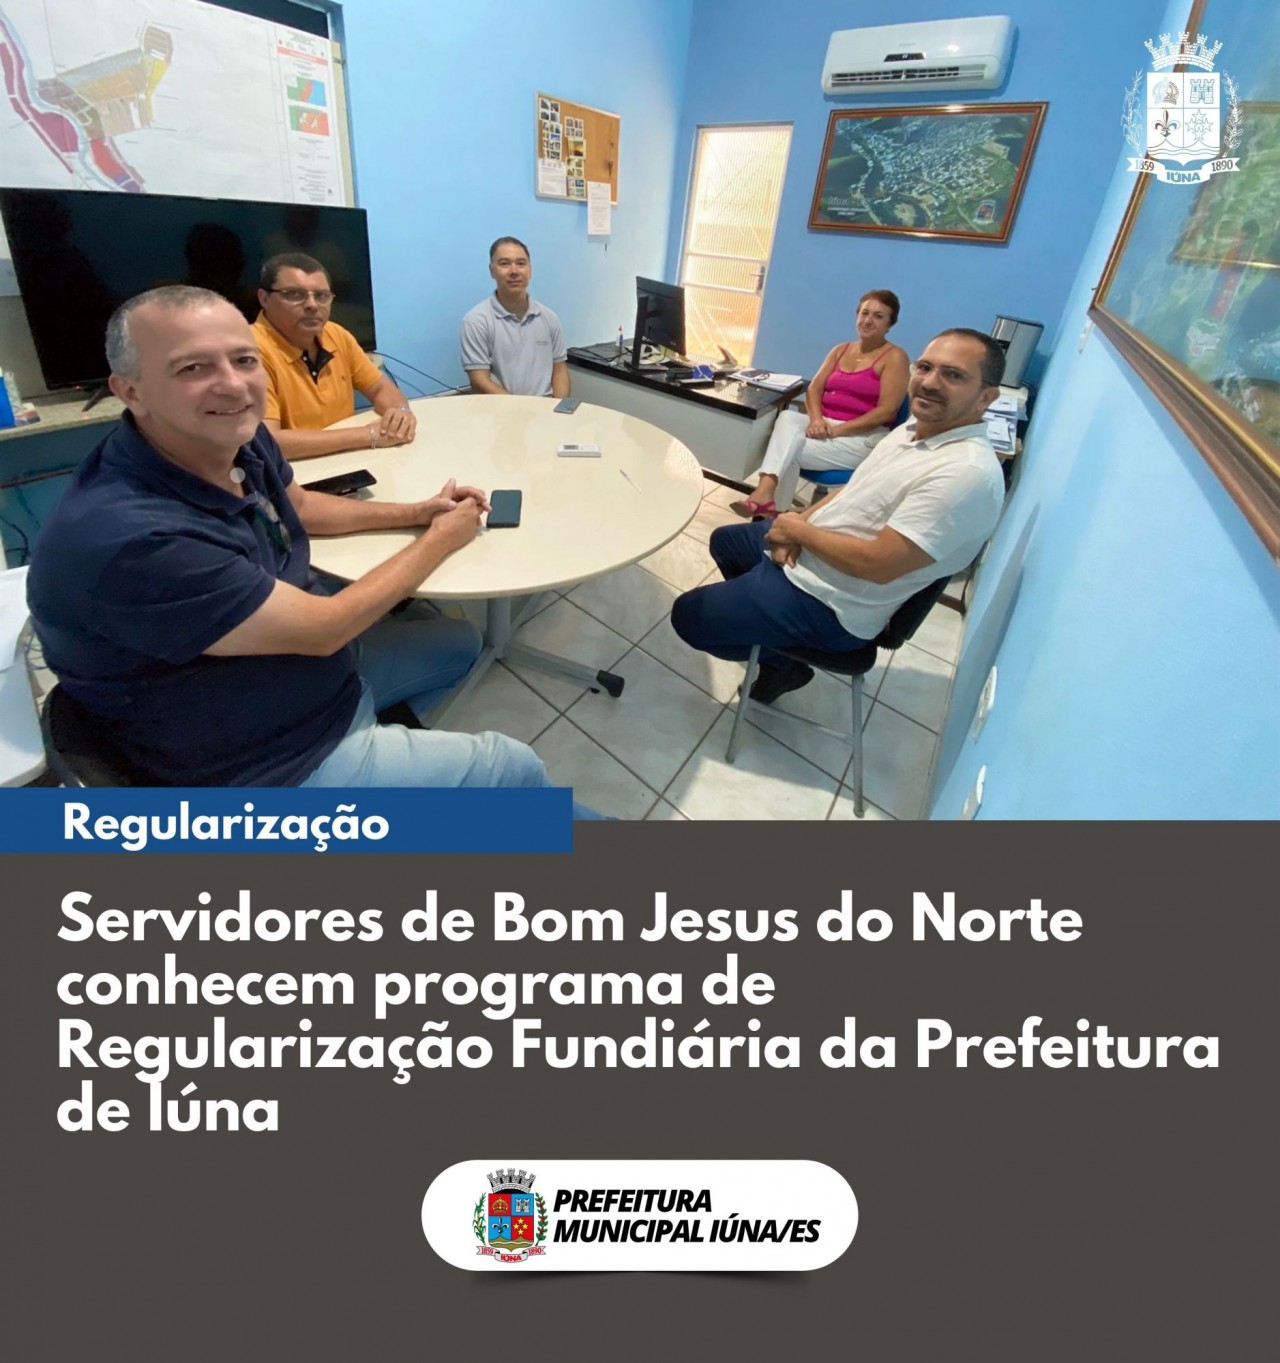 Servidores de Bom Jesus do Norte conhecem programa de Regularização Fundiária da Prefeitura de Iúna